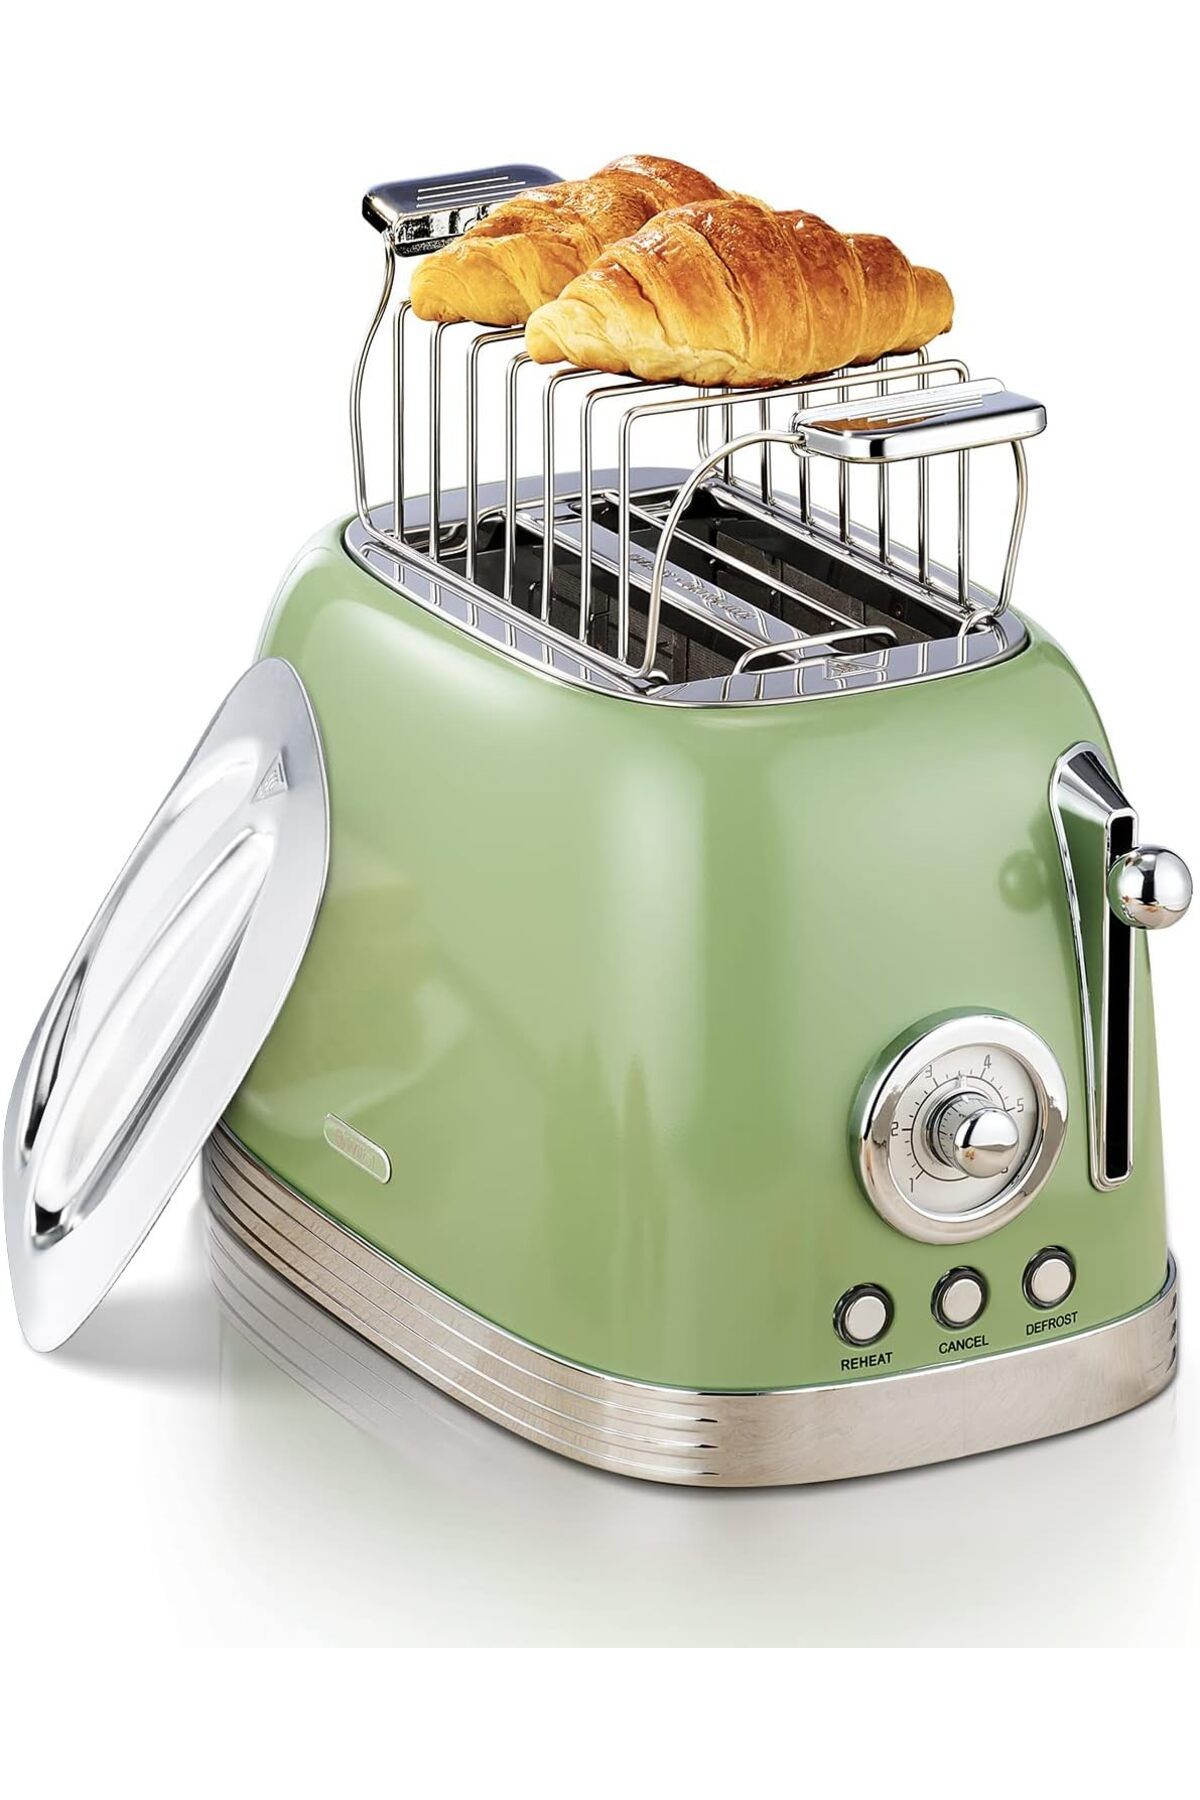 Wiltal Ekmek kızartma makinesi, 2 dilim, retro ekmek kızartma makinesi, buz çözme ve kırma fonksiyonu